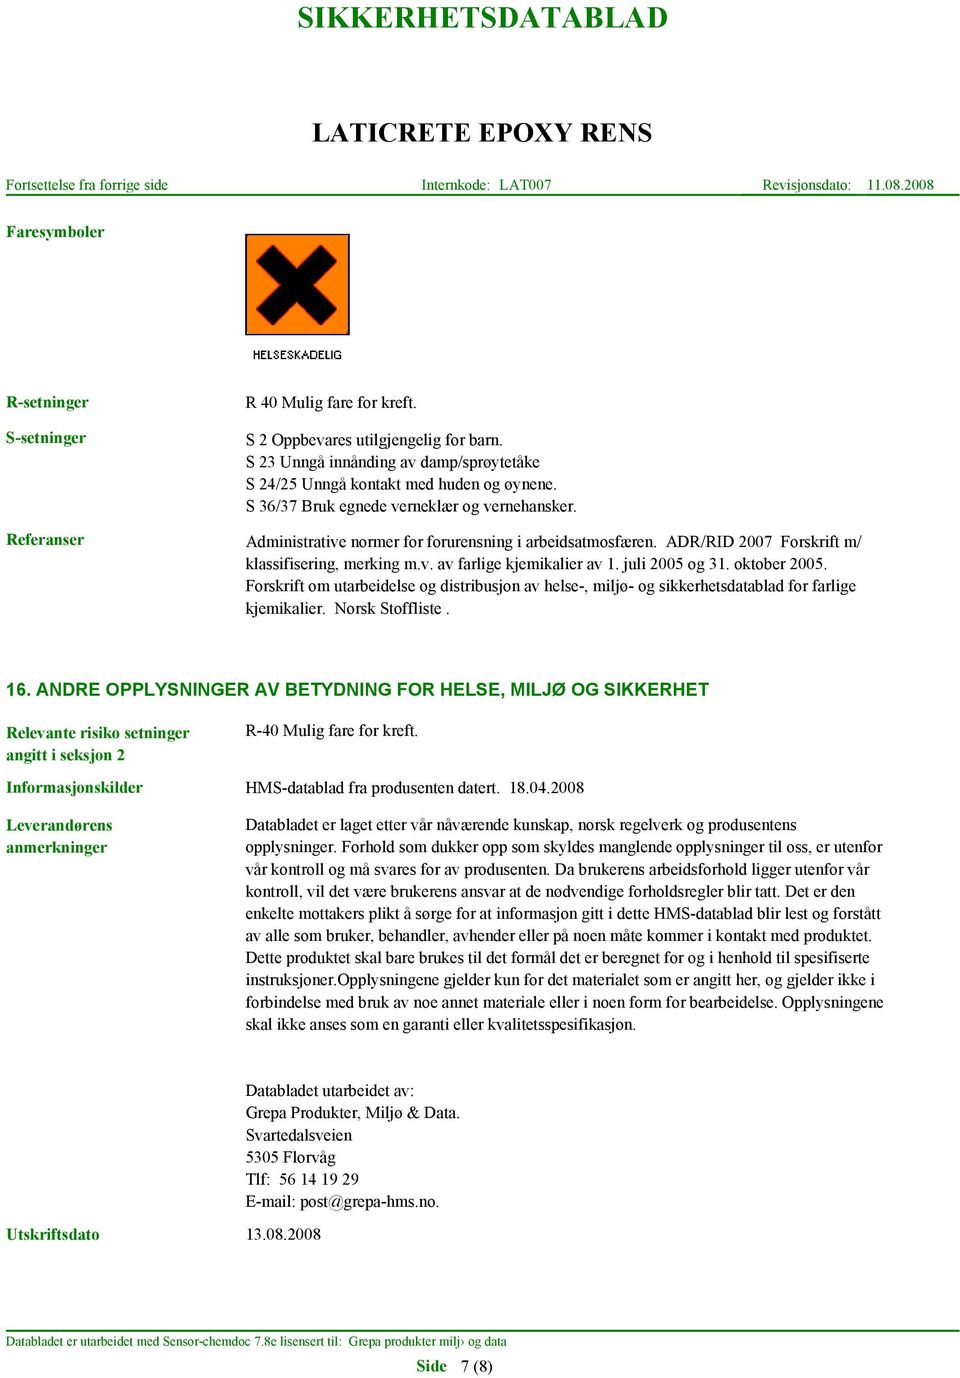 juli 2005 og 31. oktober 2005. Forskrift om utarbeidelse og distribusjon av helse-, miljø- og sikkerhetsdatablad for farlige kjemikalier. Norsk Stoffliste. 16.